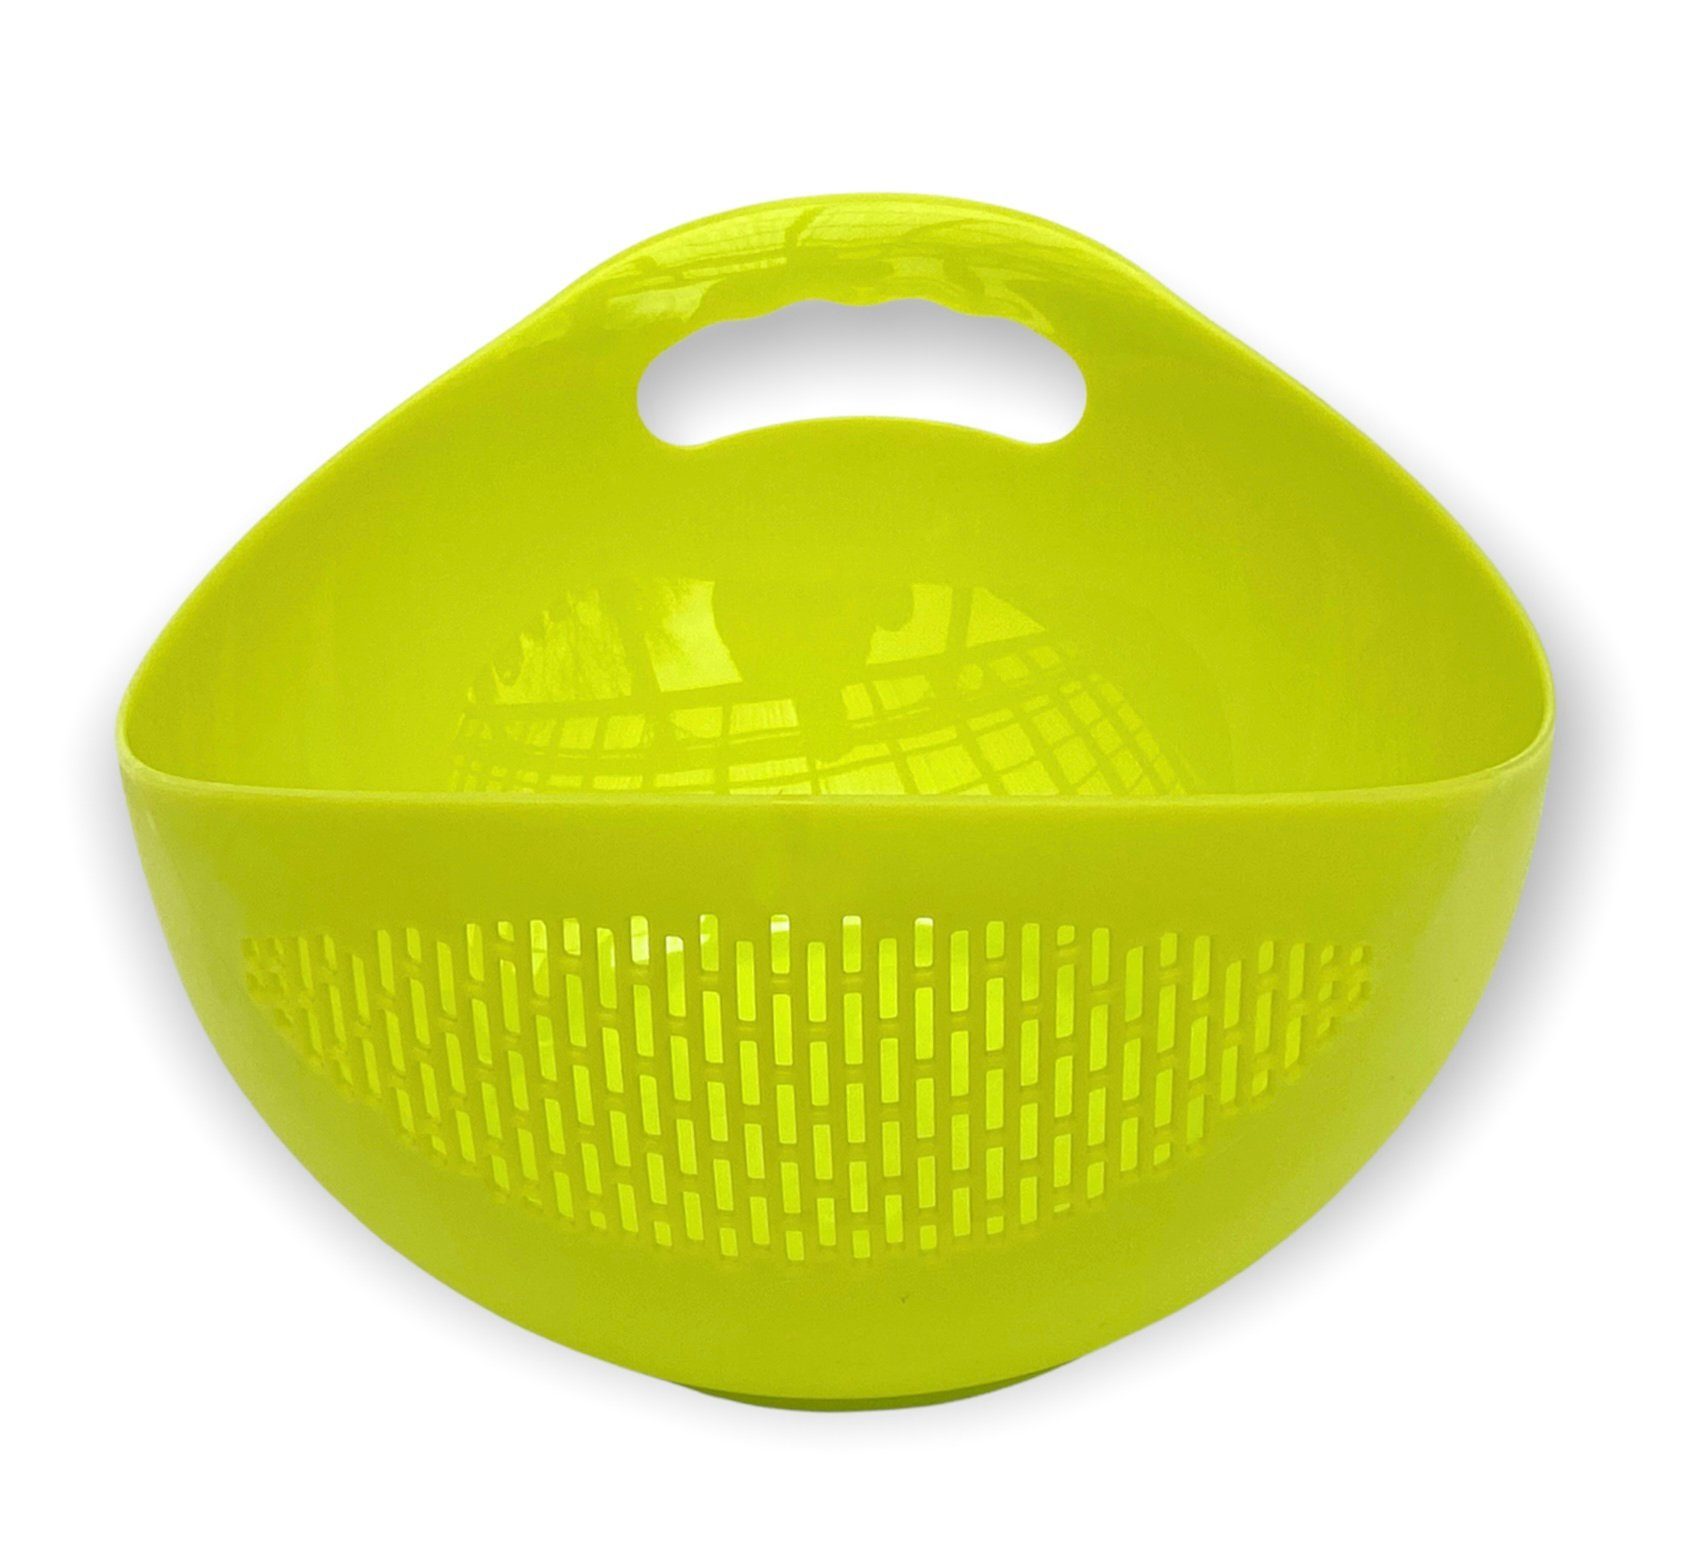 Nudelsieb Abtropfsieb Seiher Kunststoff Waschschüssel Küchensieb 521 mit Spülmaschinenfest DanDiBo Schüssel Salatschüssel Grün Sieb